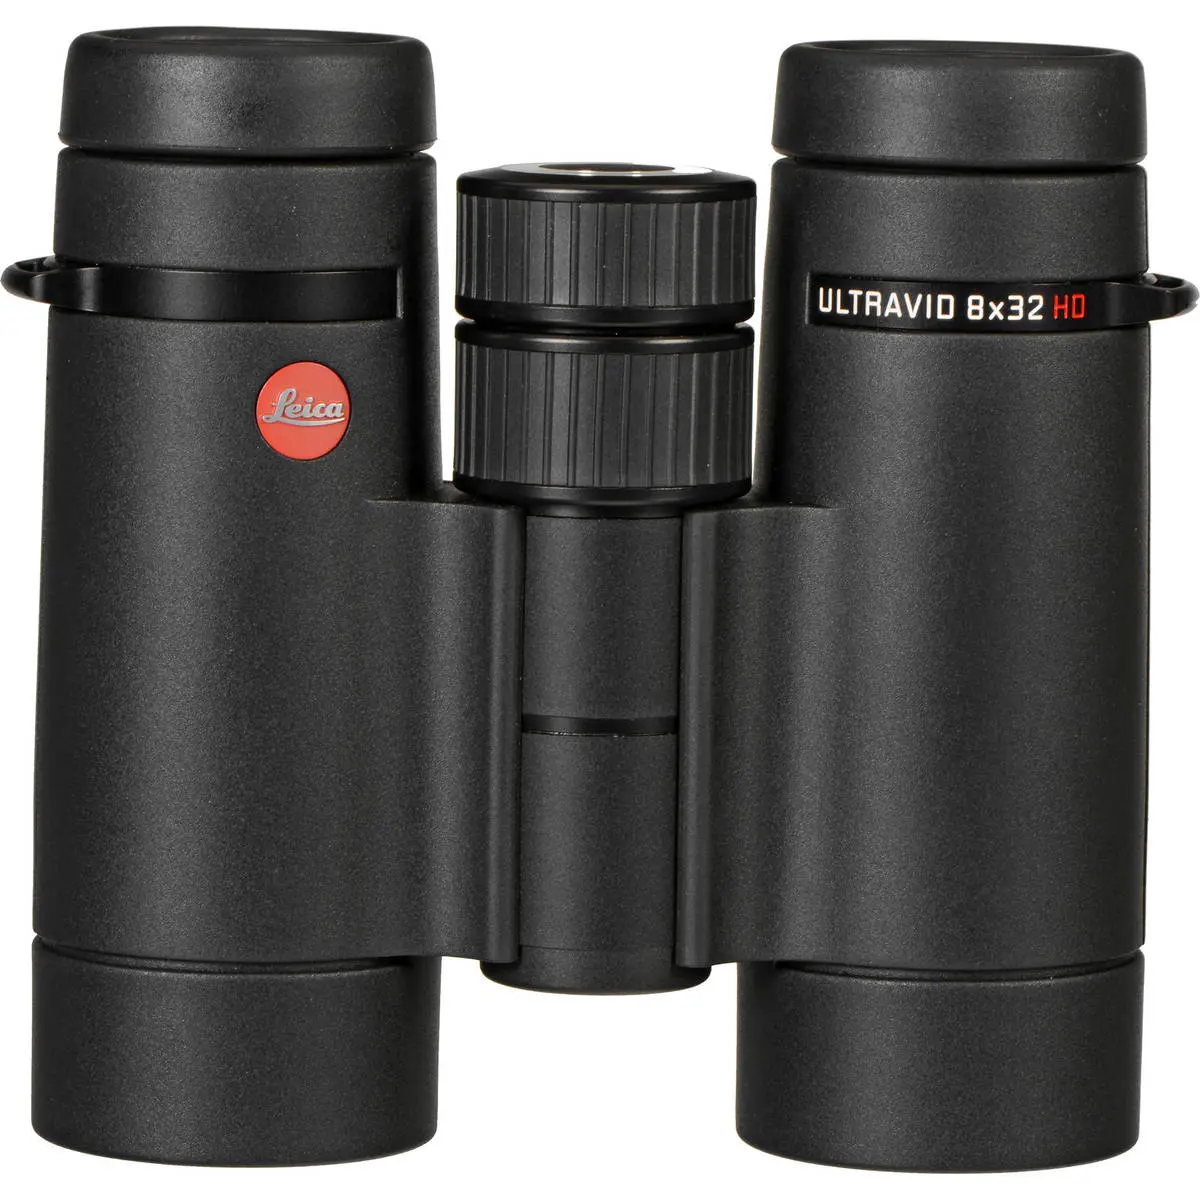 2. Leica 40090 ULTRAVID 8x32 HD-Plus Binoculars